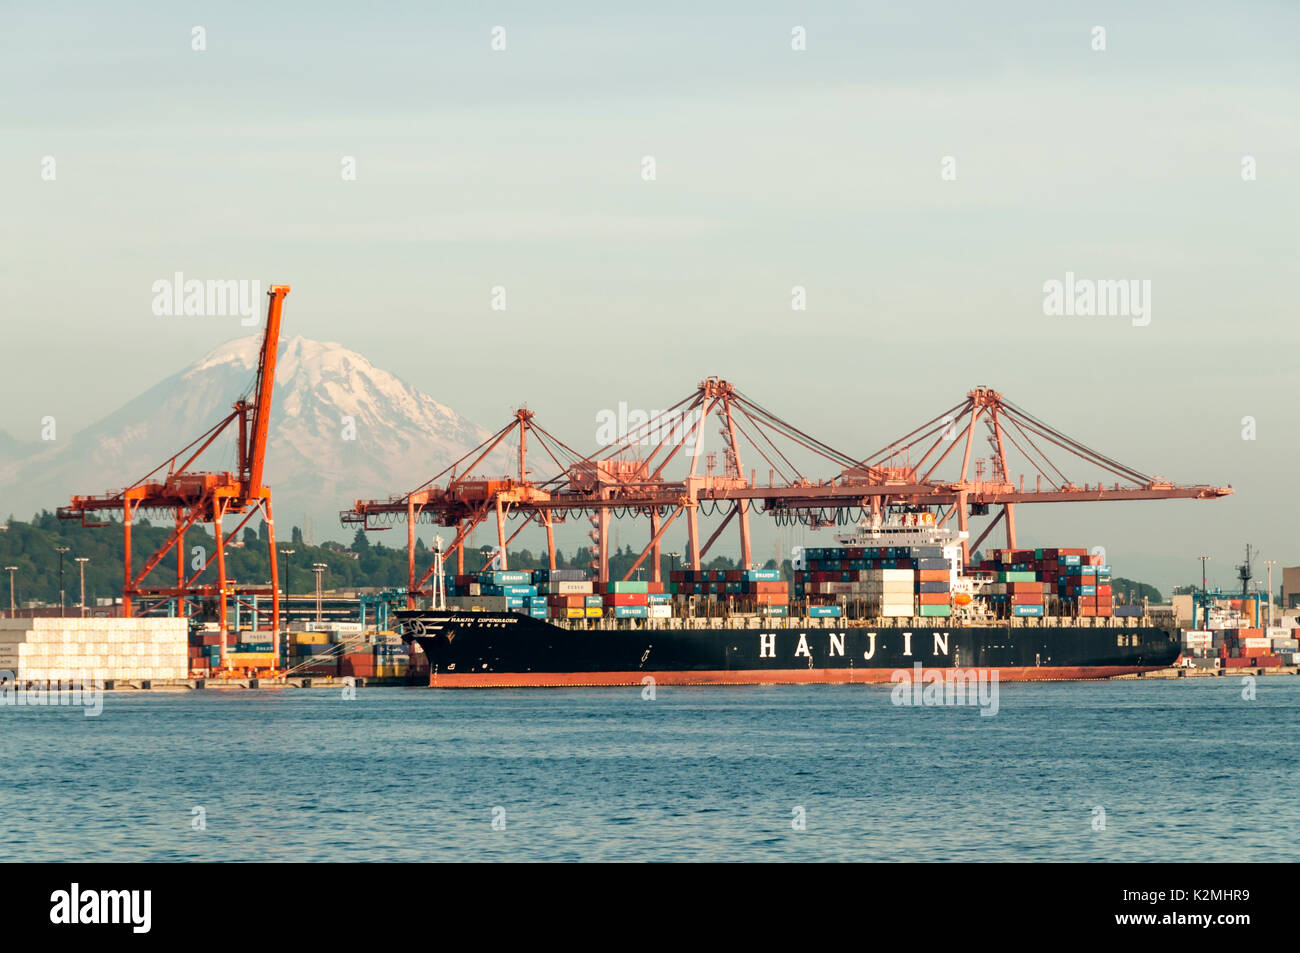 Das containerschiff Hanjin Kopenhagen in Seattle Containerhafen mit Mount Rainier im Hintergrund. Stockfoto